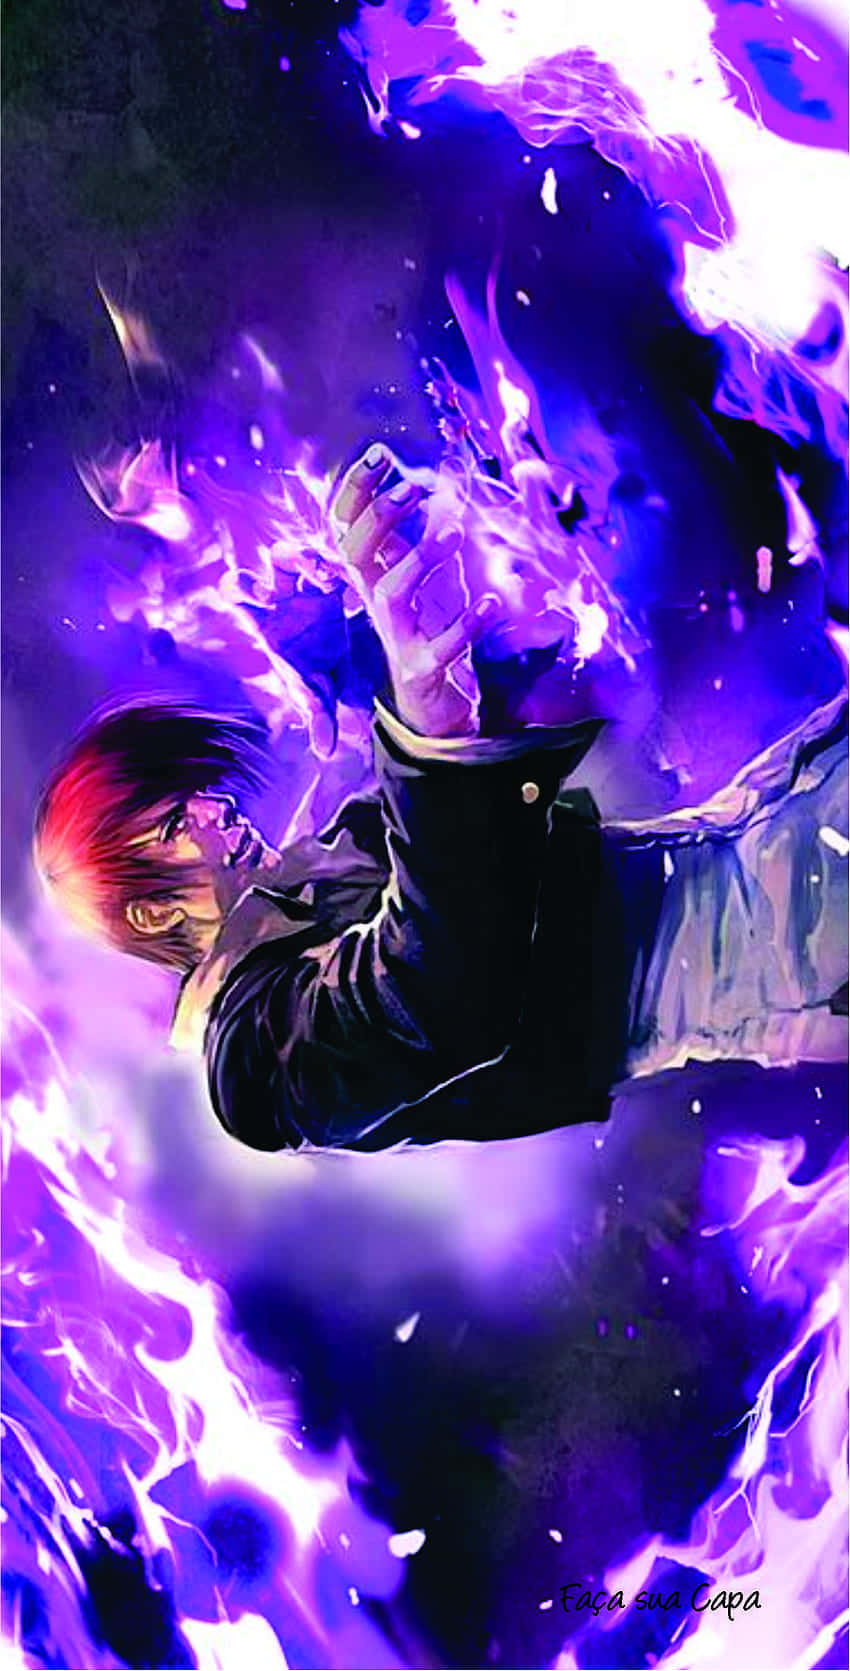 Unpersonaje De Anime Morado Y Azul Volando En El Aire. Fondo de pantalla